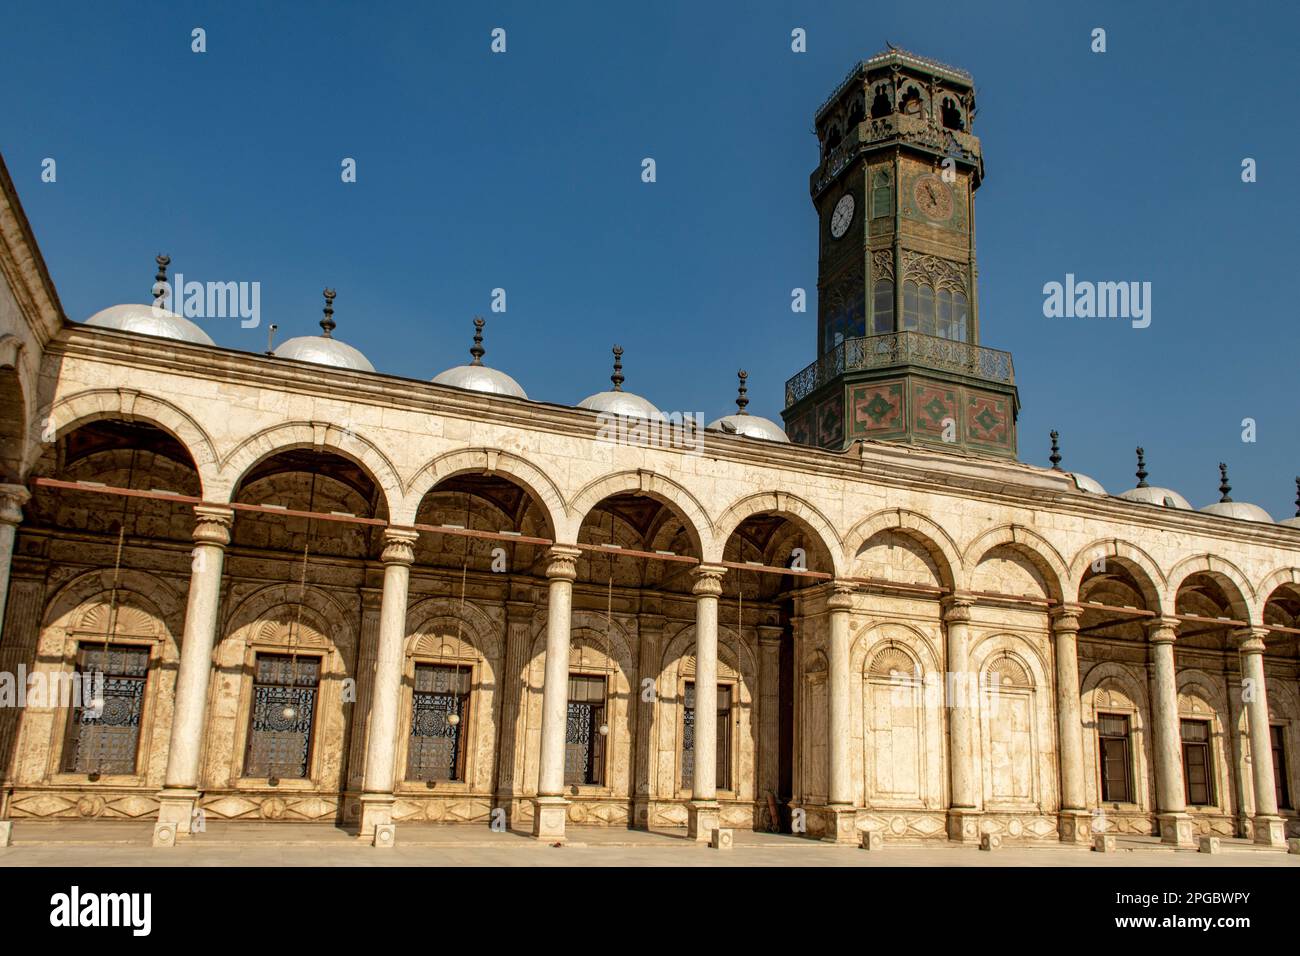 Tour de l'horloge dans la mosquée de Mohamed Ali, le Caire, Egypte Banque D'Images